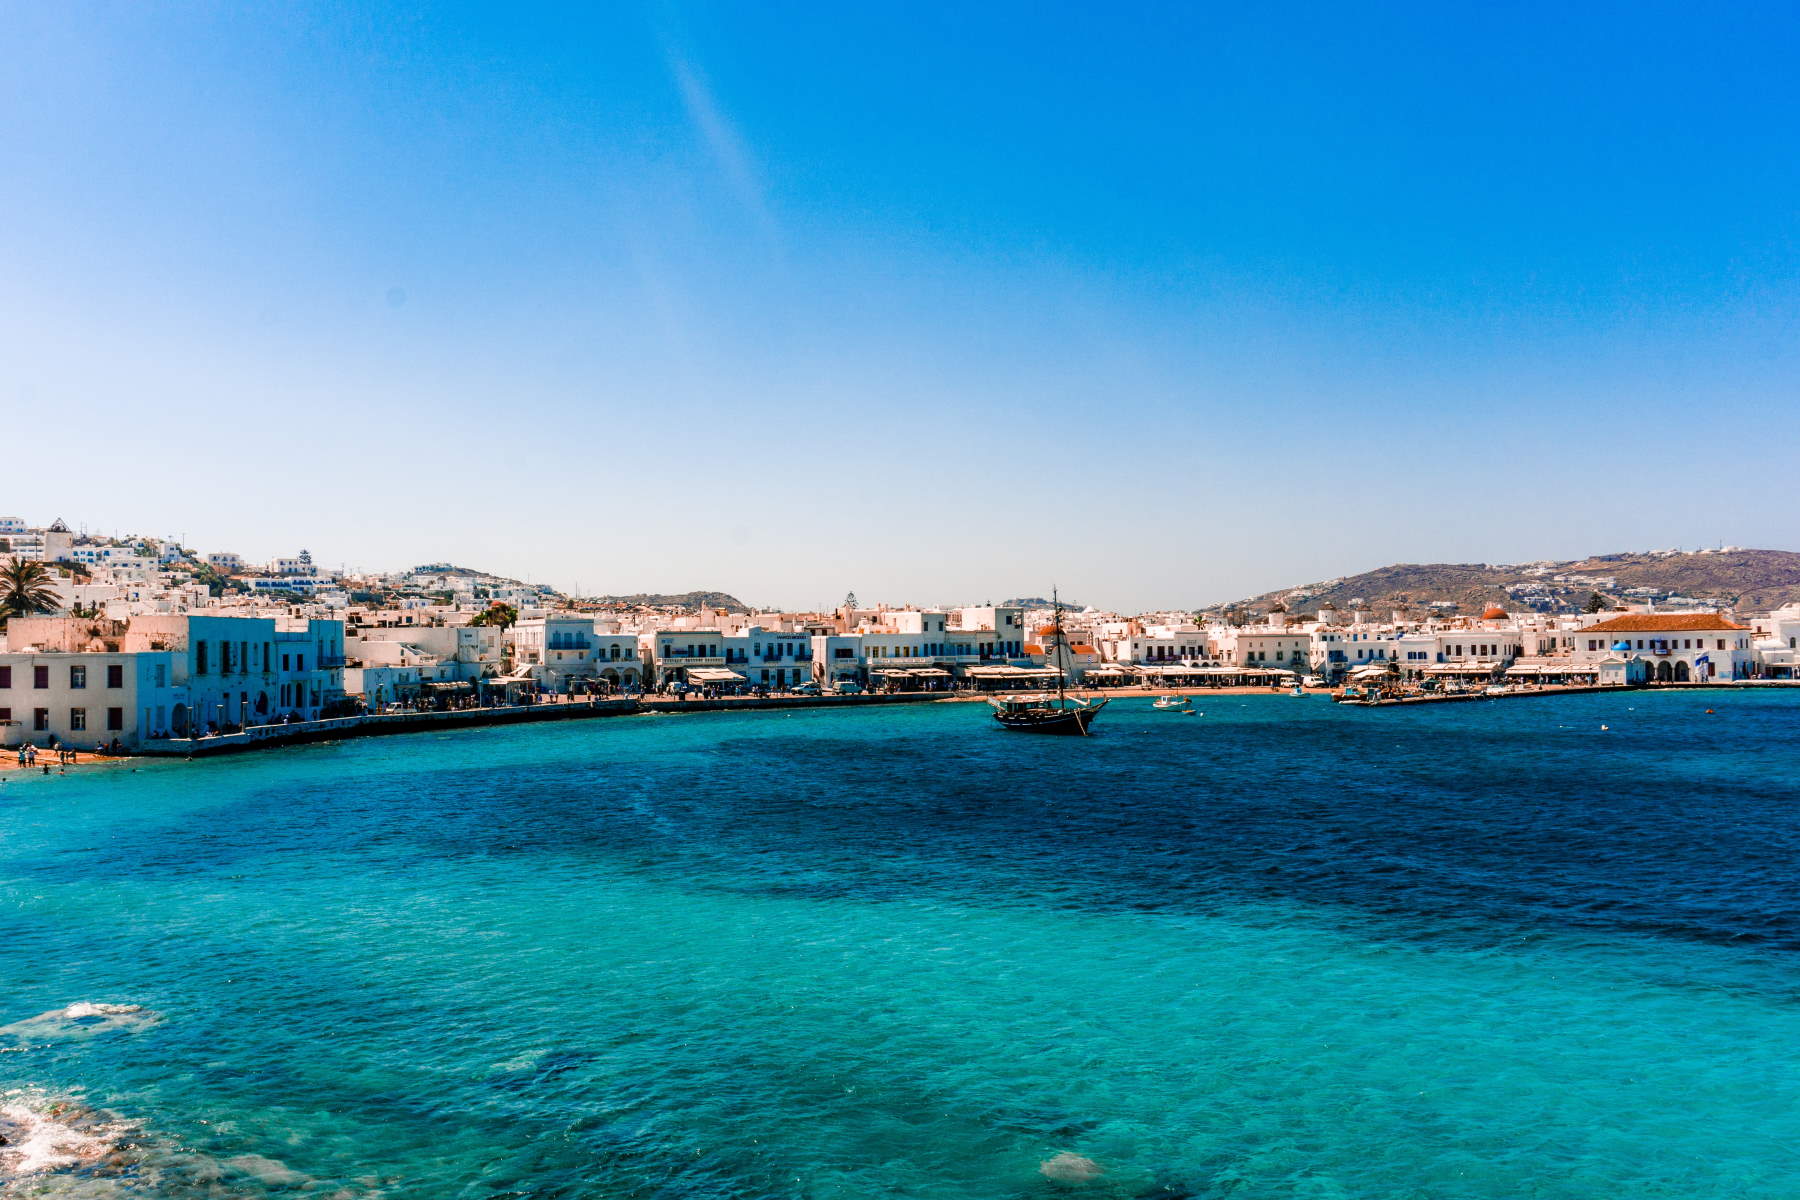 Find Billige Pakkerejser til Grækenland - Rejs Dig Lykkelig